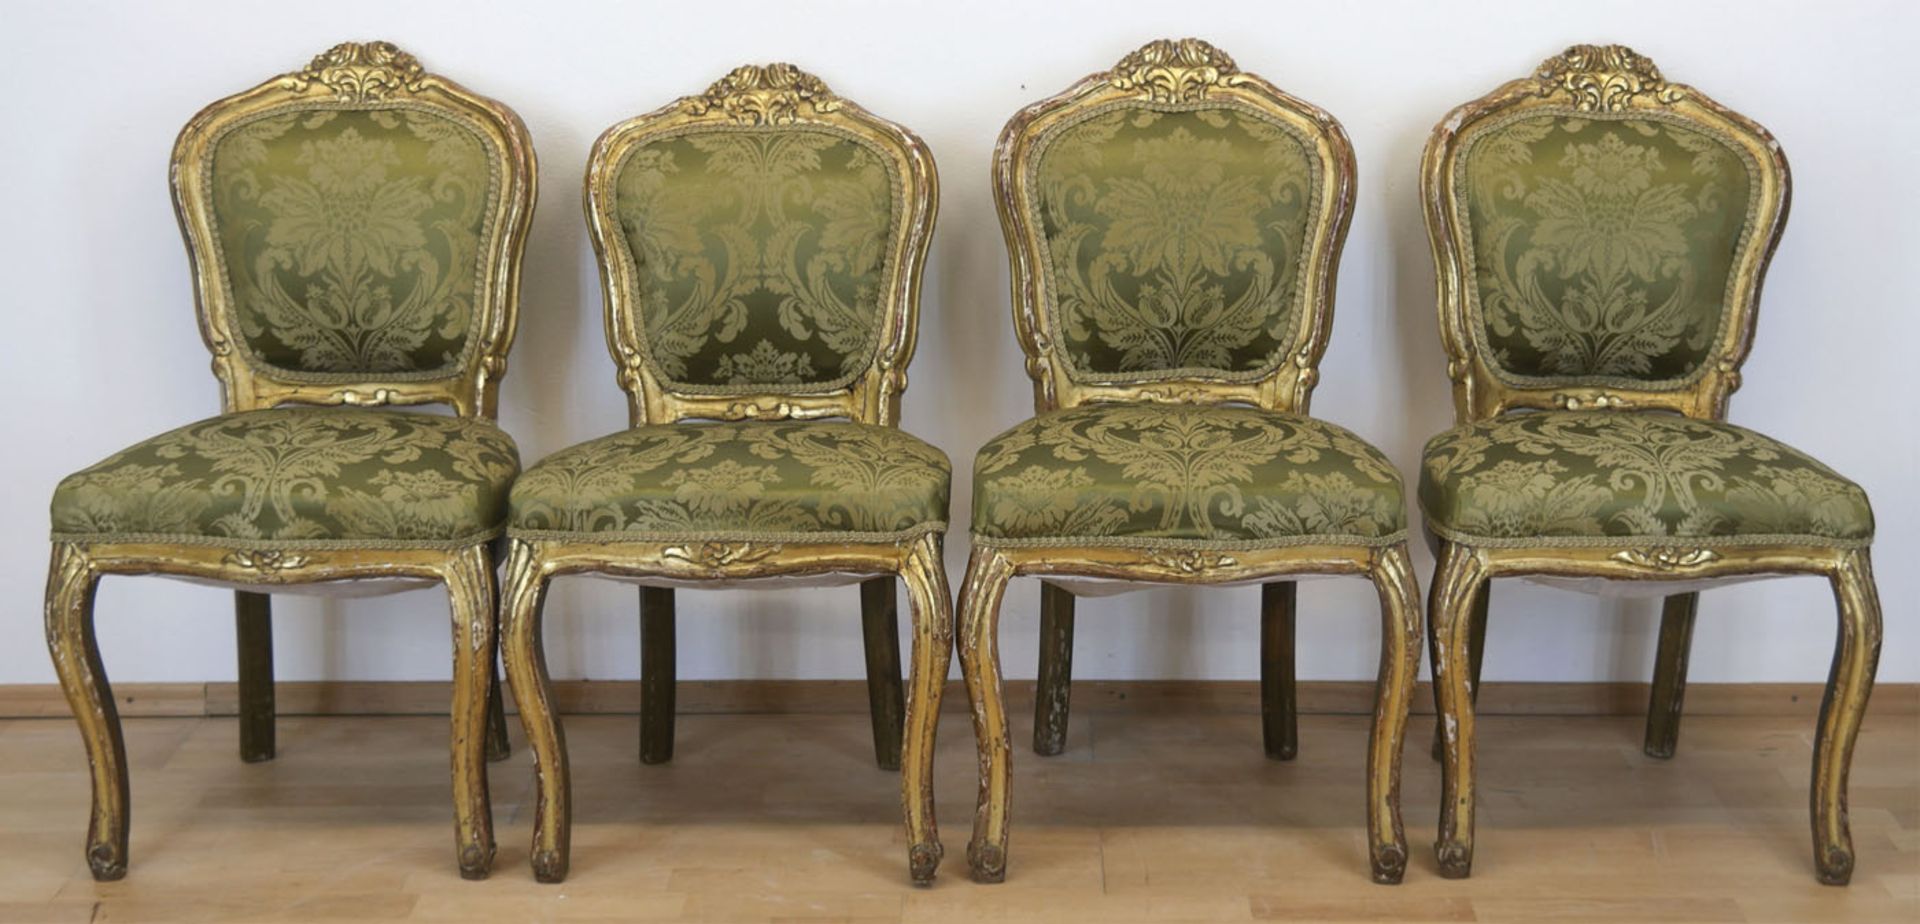 4 Stühle im Barockstil, 19. Jh., Holz, beschnitzt und gold gefaßt, gepolsterter Sitz undRückenlehne,